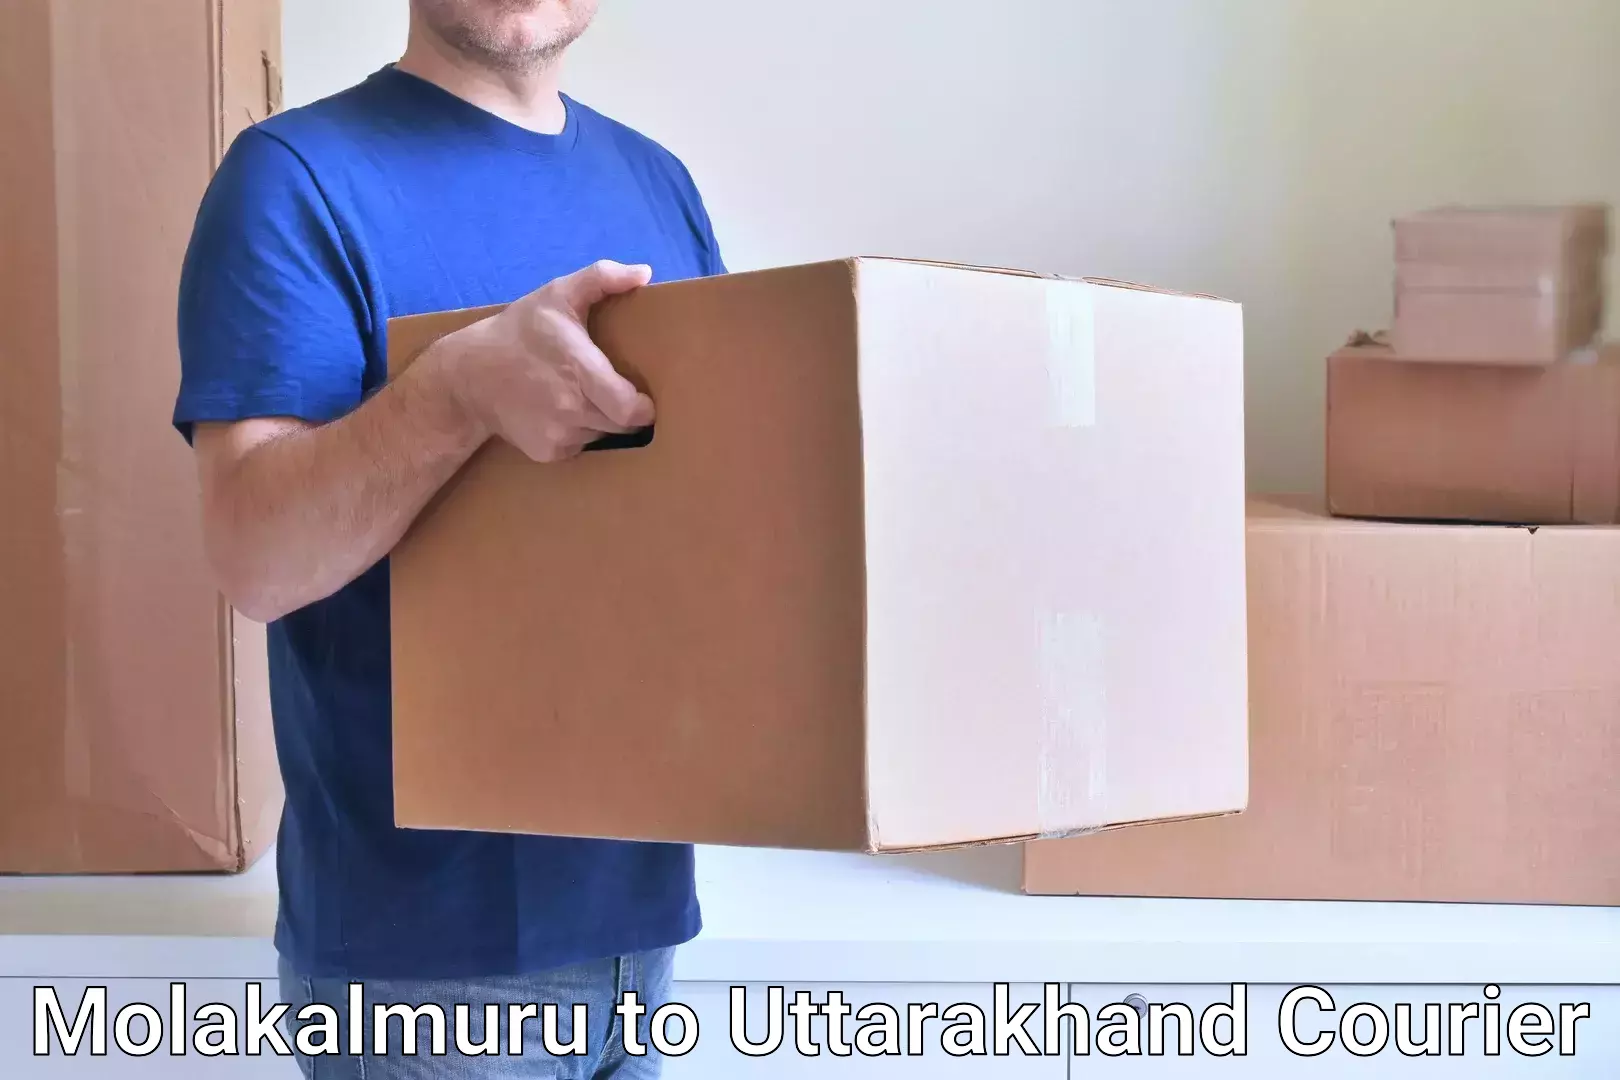 Premium courier services Molakalmuru to NIT Garhwal